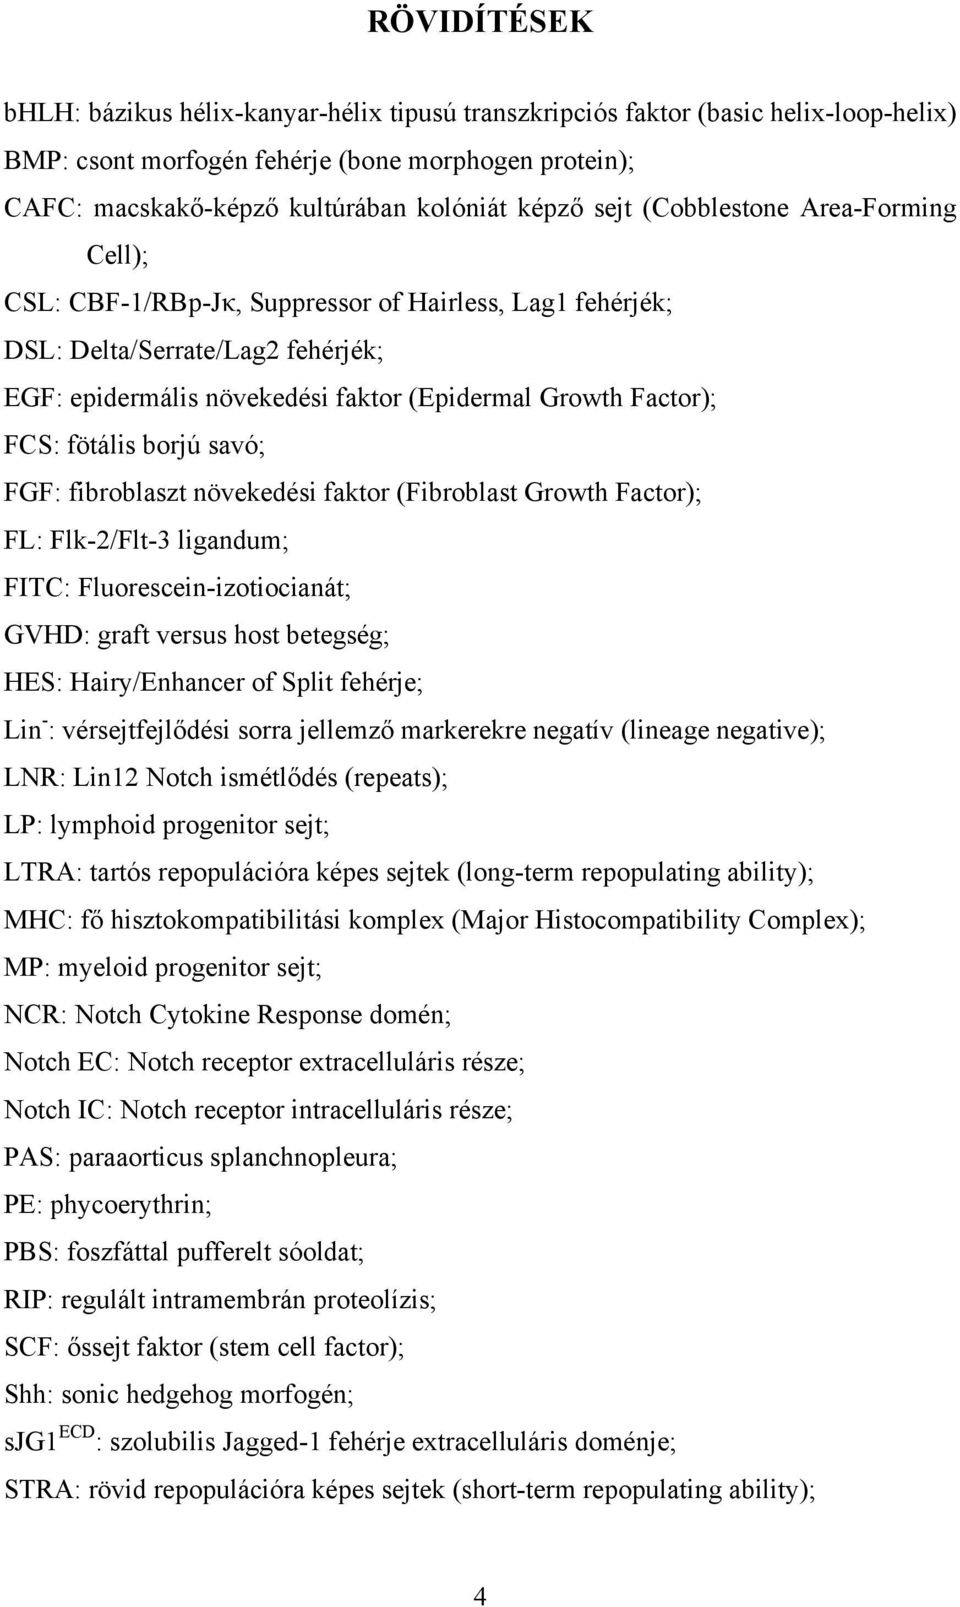 fötális borjú savó; FGF: fibroblaszt növekedési faktor (Fibroblast Growth Factor); FL: Flk-2/Flt-3 ligandum; FITC: Fluorescein-izotiocianát; GVHD: graft versus host betegség; HES: Hairy/Enhancer of